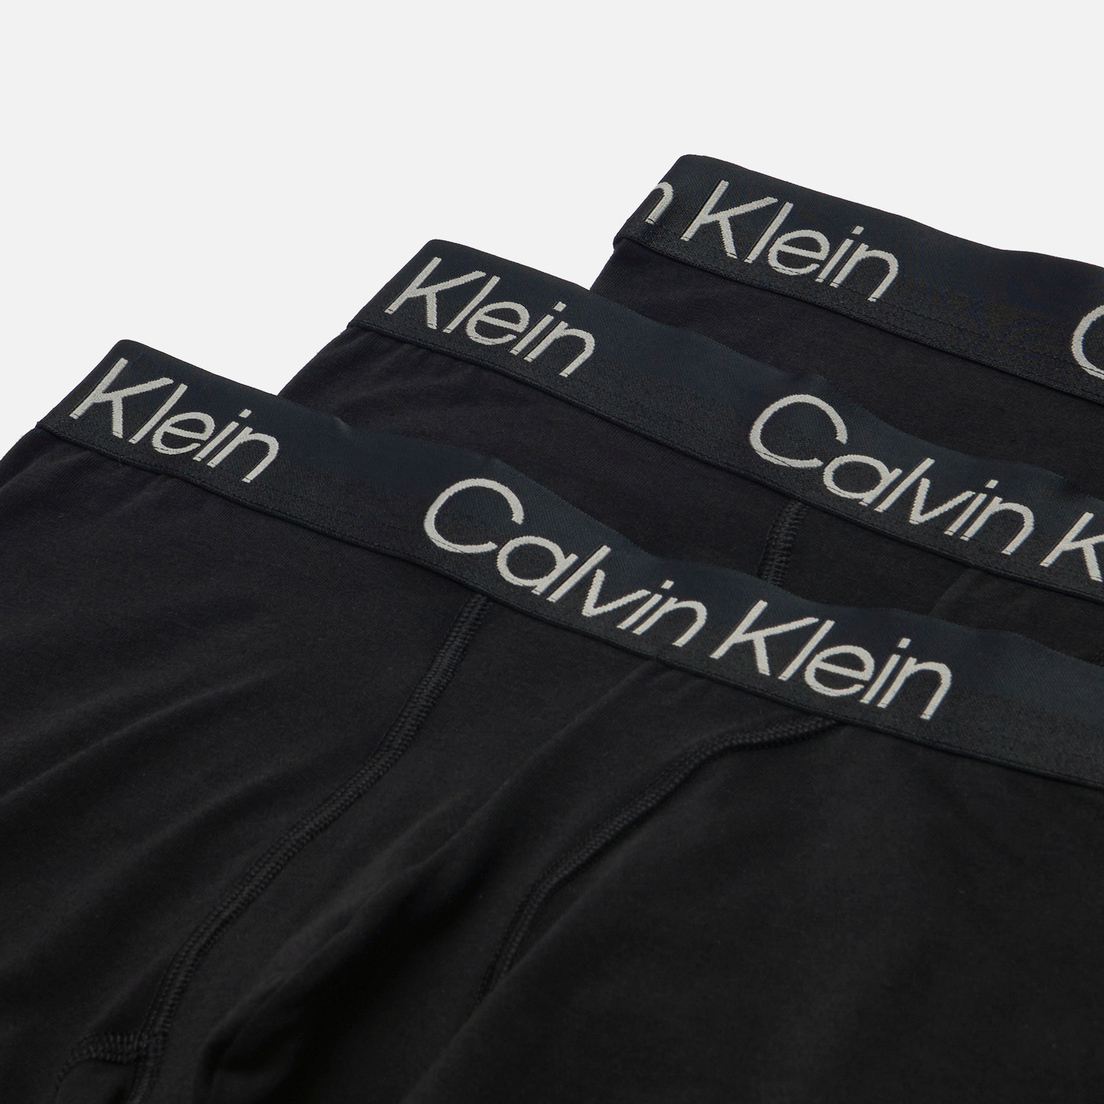 Calvin Klein Underwear Комплект мужских трусов 3-Pack Trunk Modern Structure